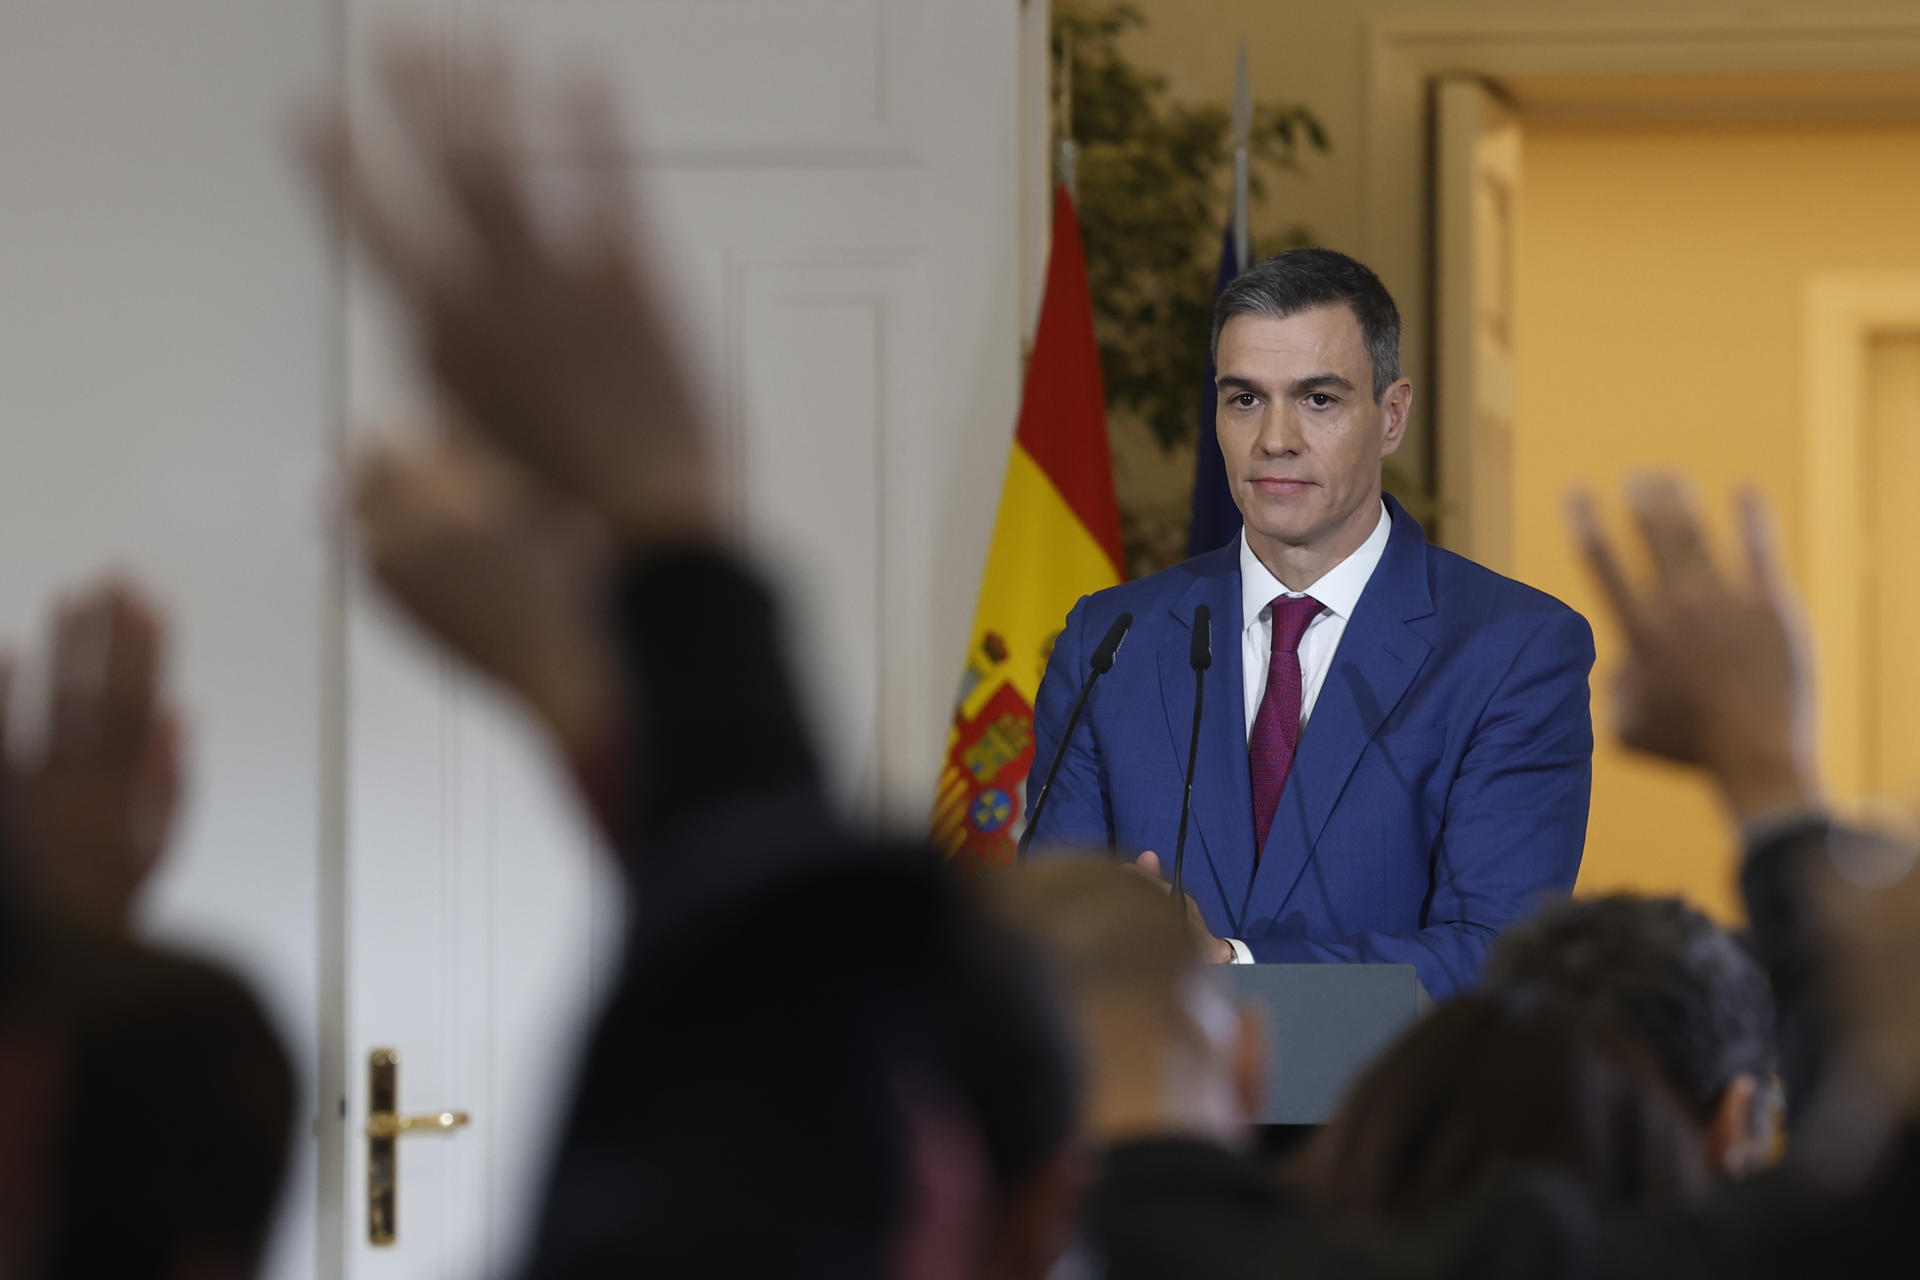 Pedro Sánchez responde a la petición de referéndum de Pere Aragonès: "Nada nuevo bajo el sol"